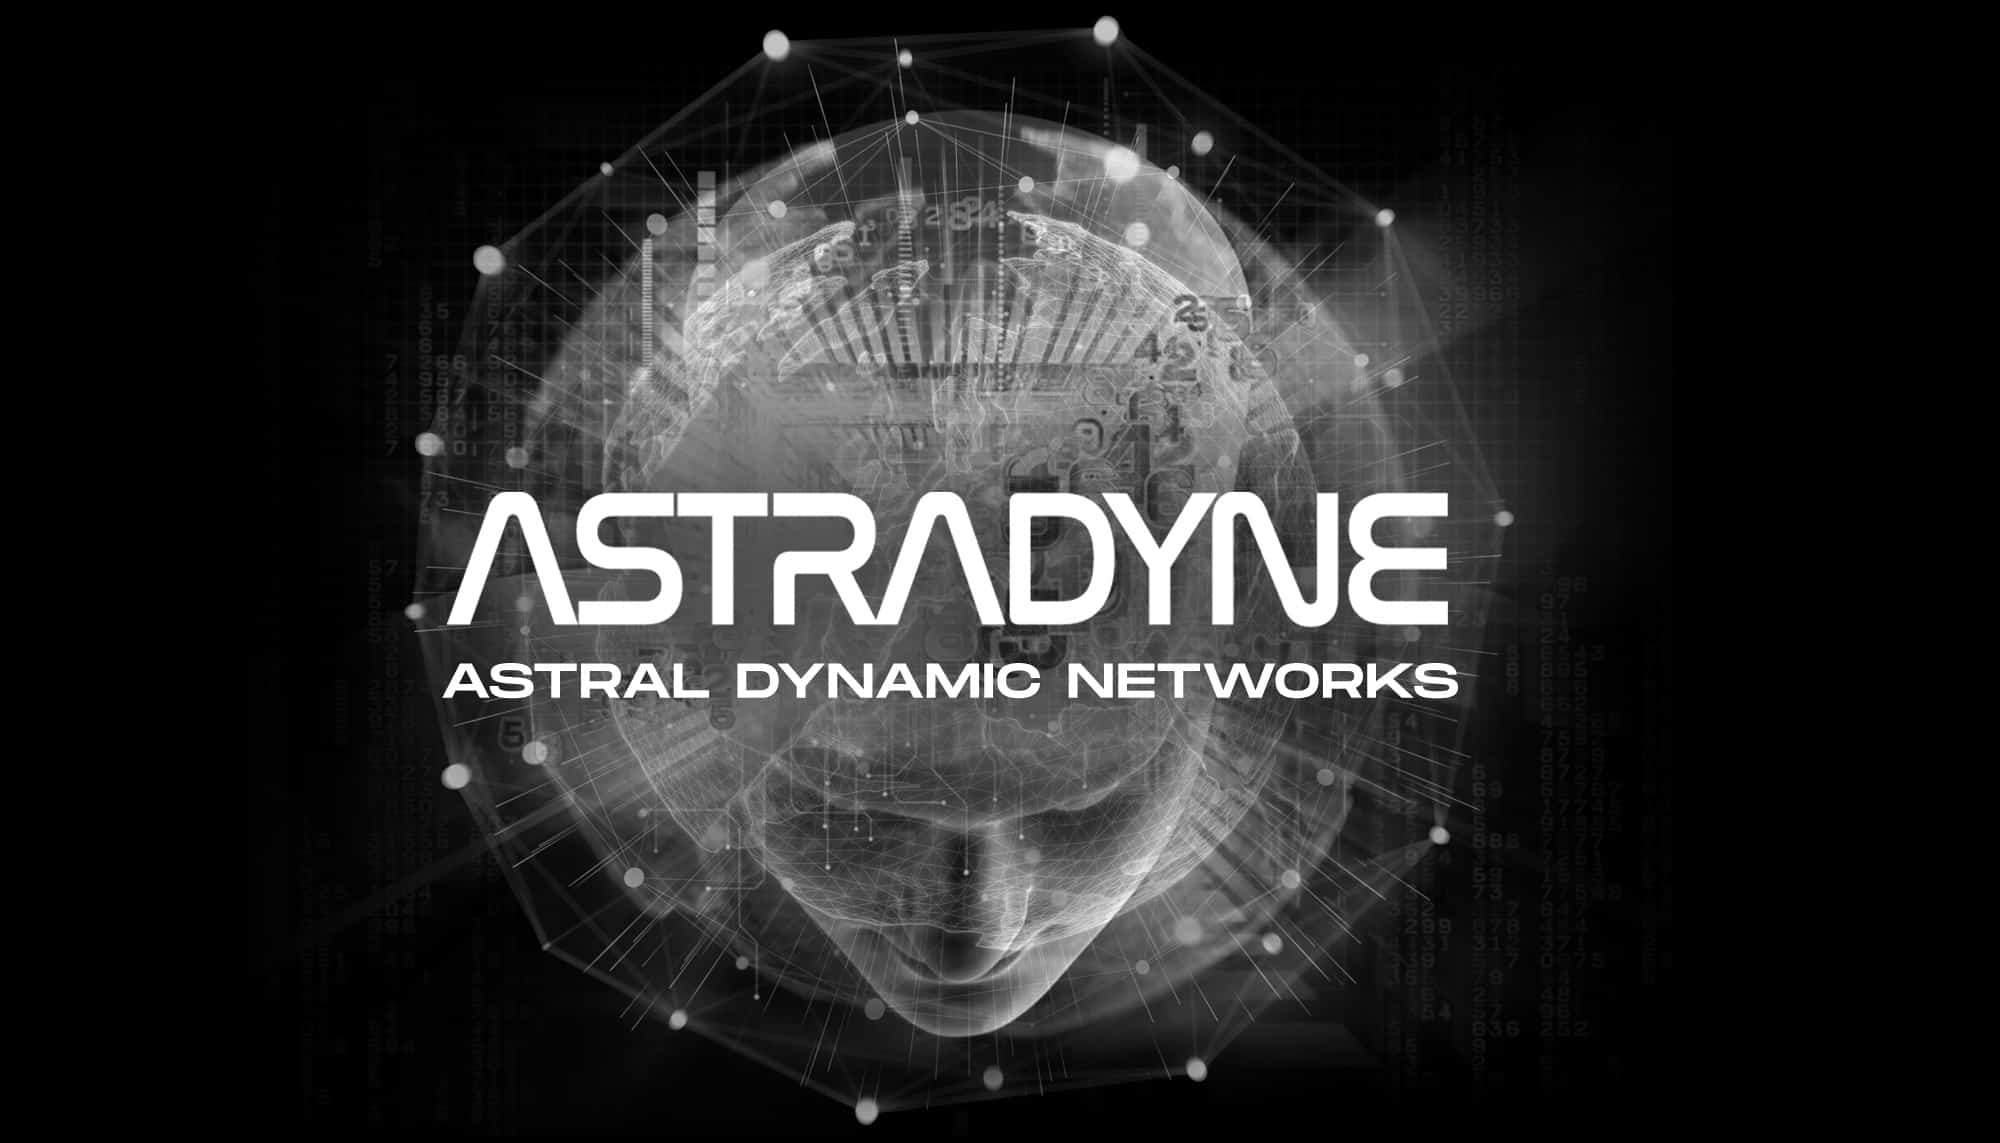 Astradyne Astral Dynamic Networks